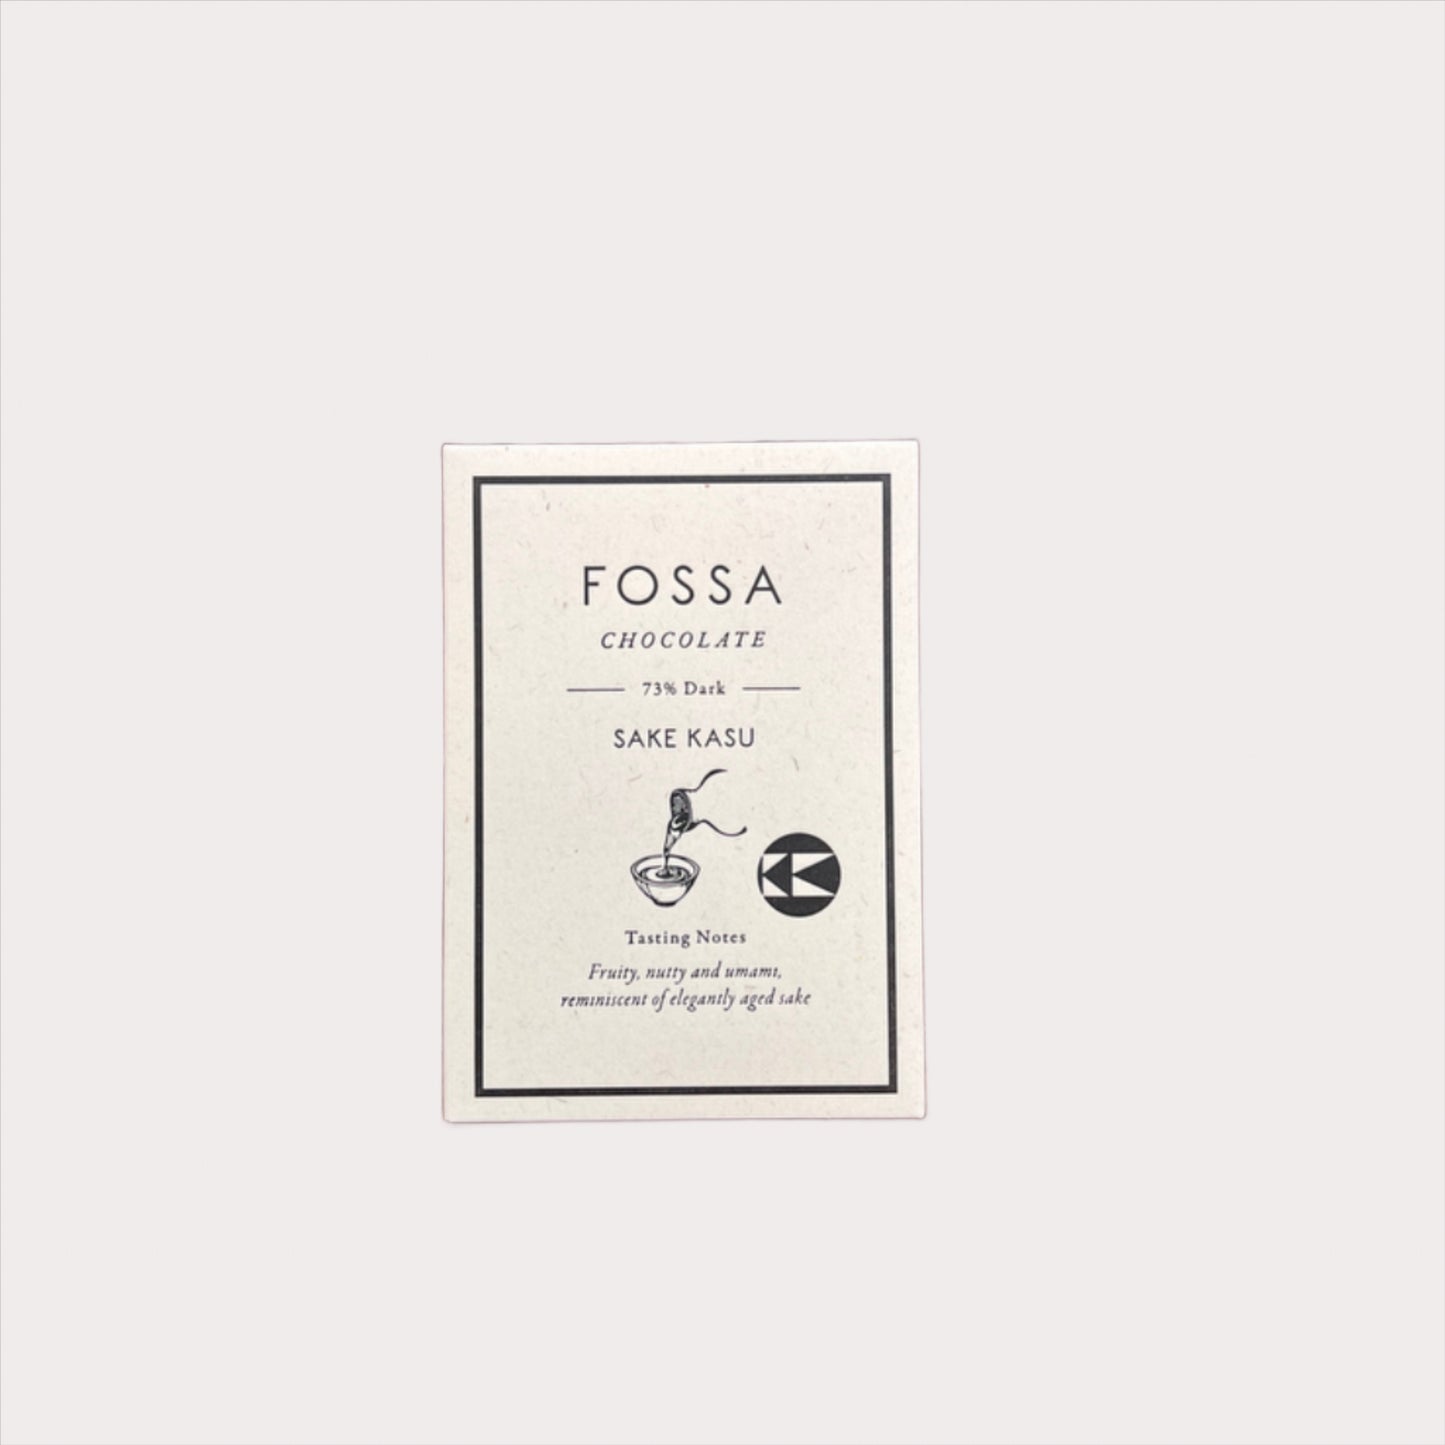 Fossa Sake Kasu Dark 73% (Limited Edition)